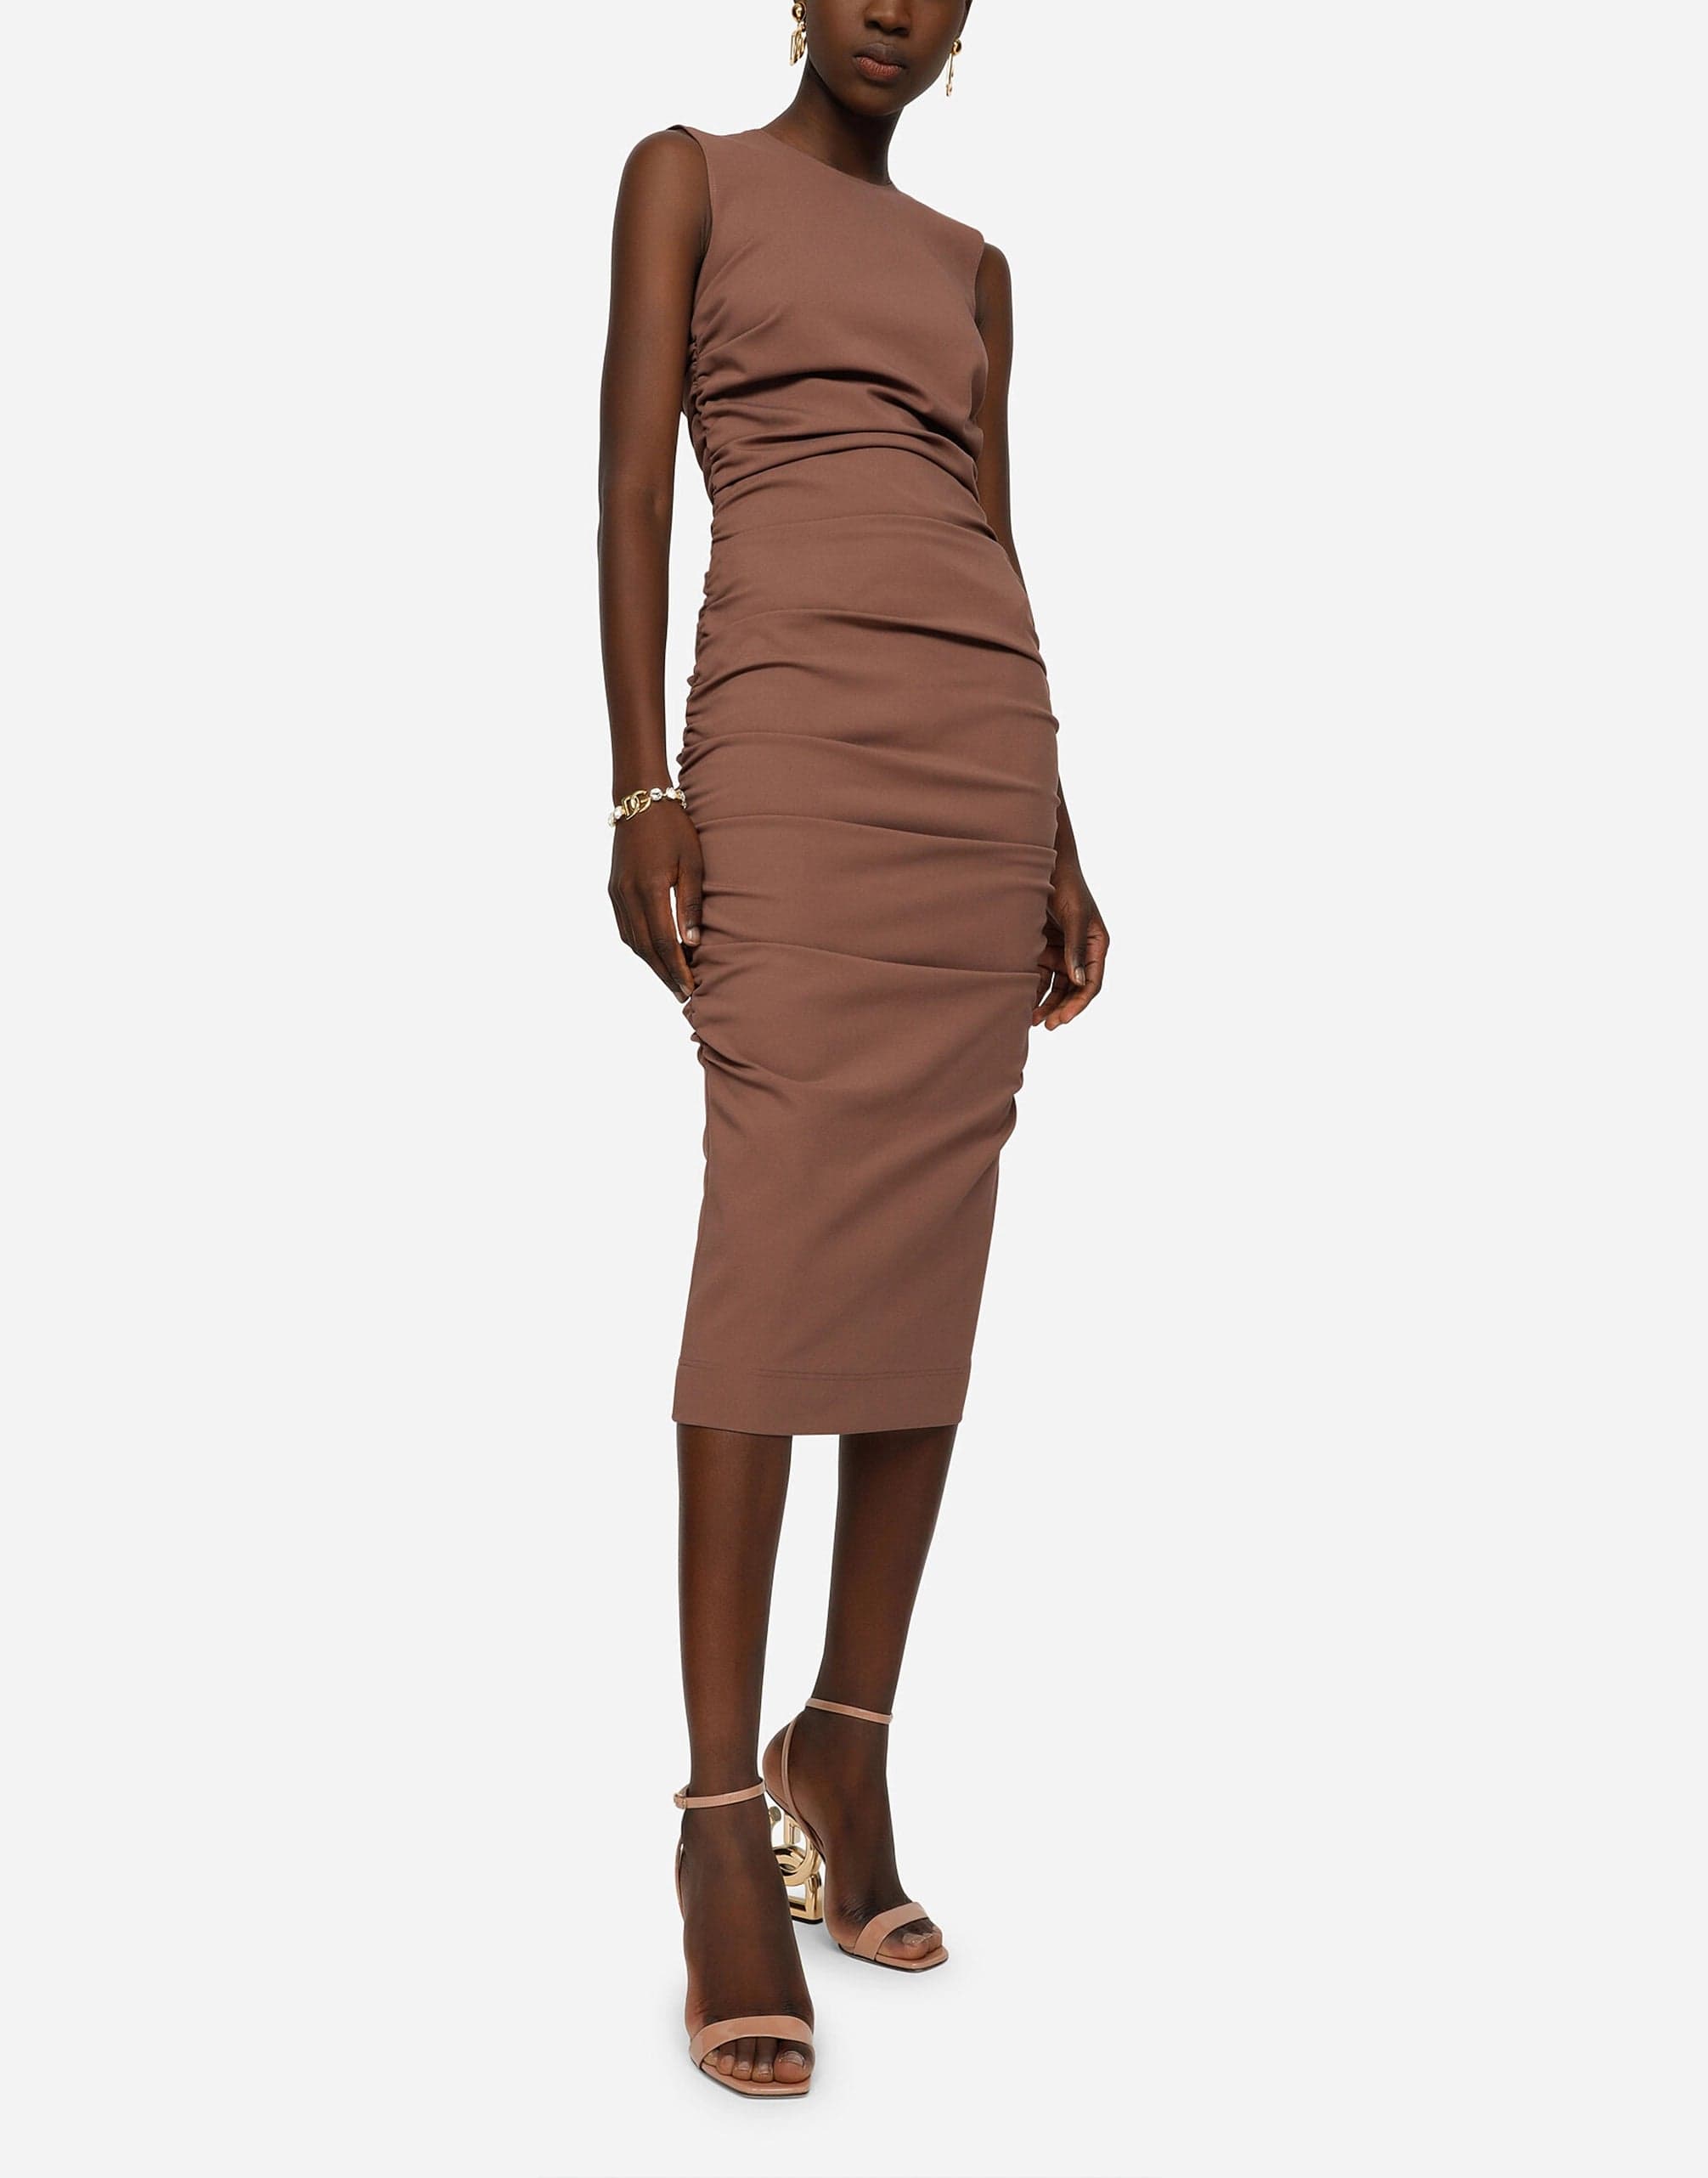 Dolce & Gabbana Sleeveless Calf-Length Jersey Dress